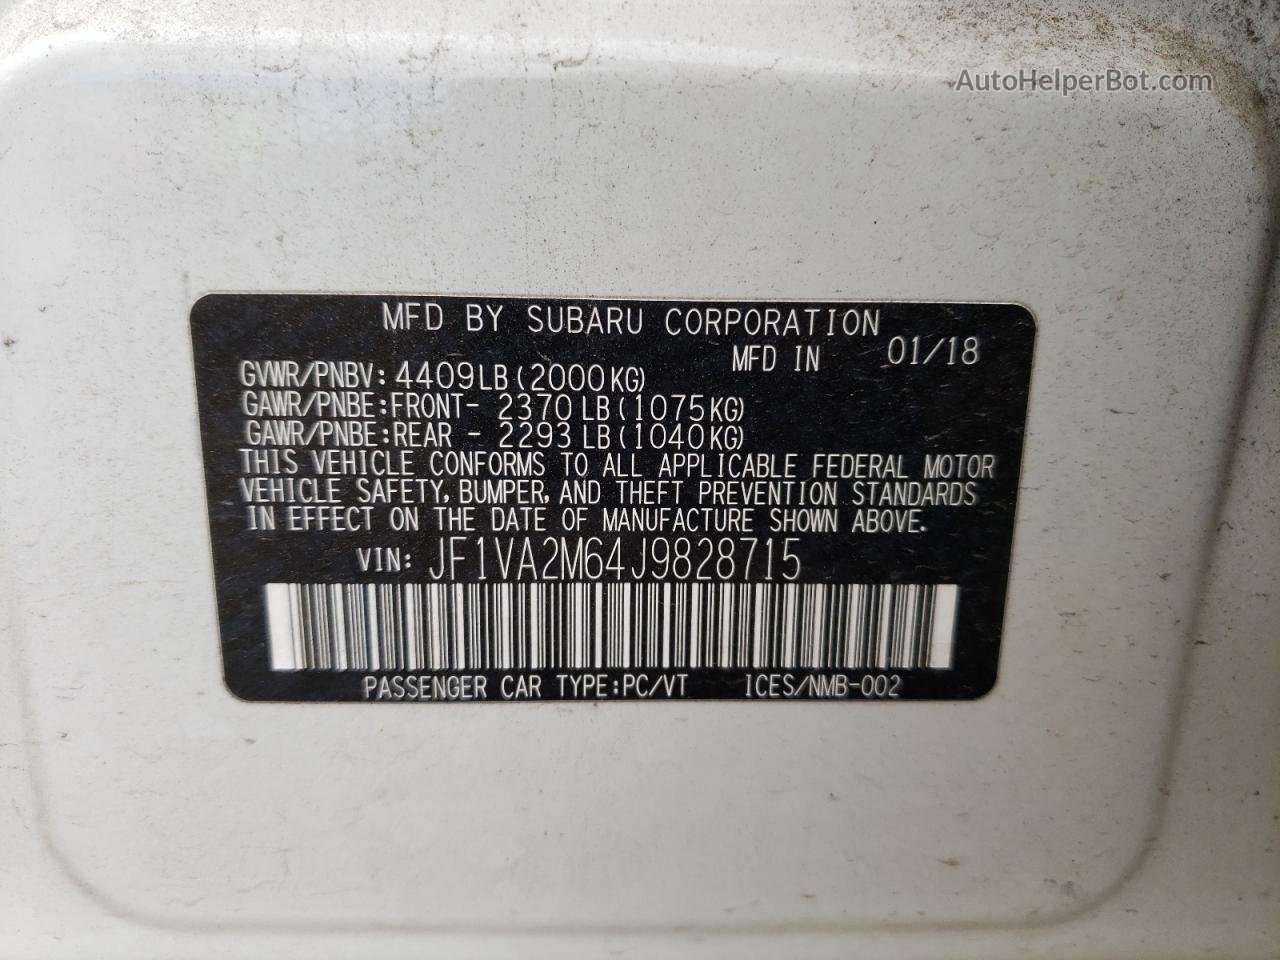 2018 Subaru Wrx Sti White vin: JF1VA2M64J9828715